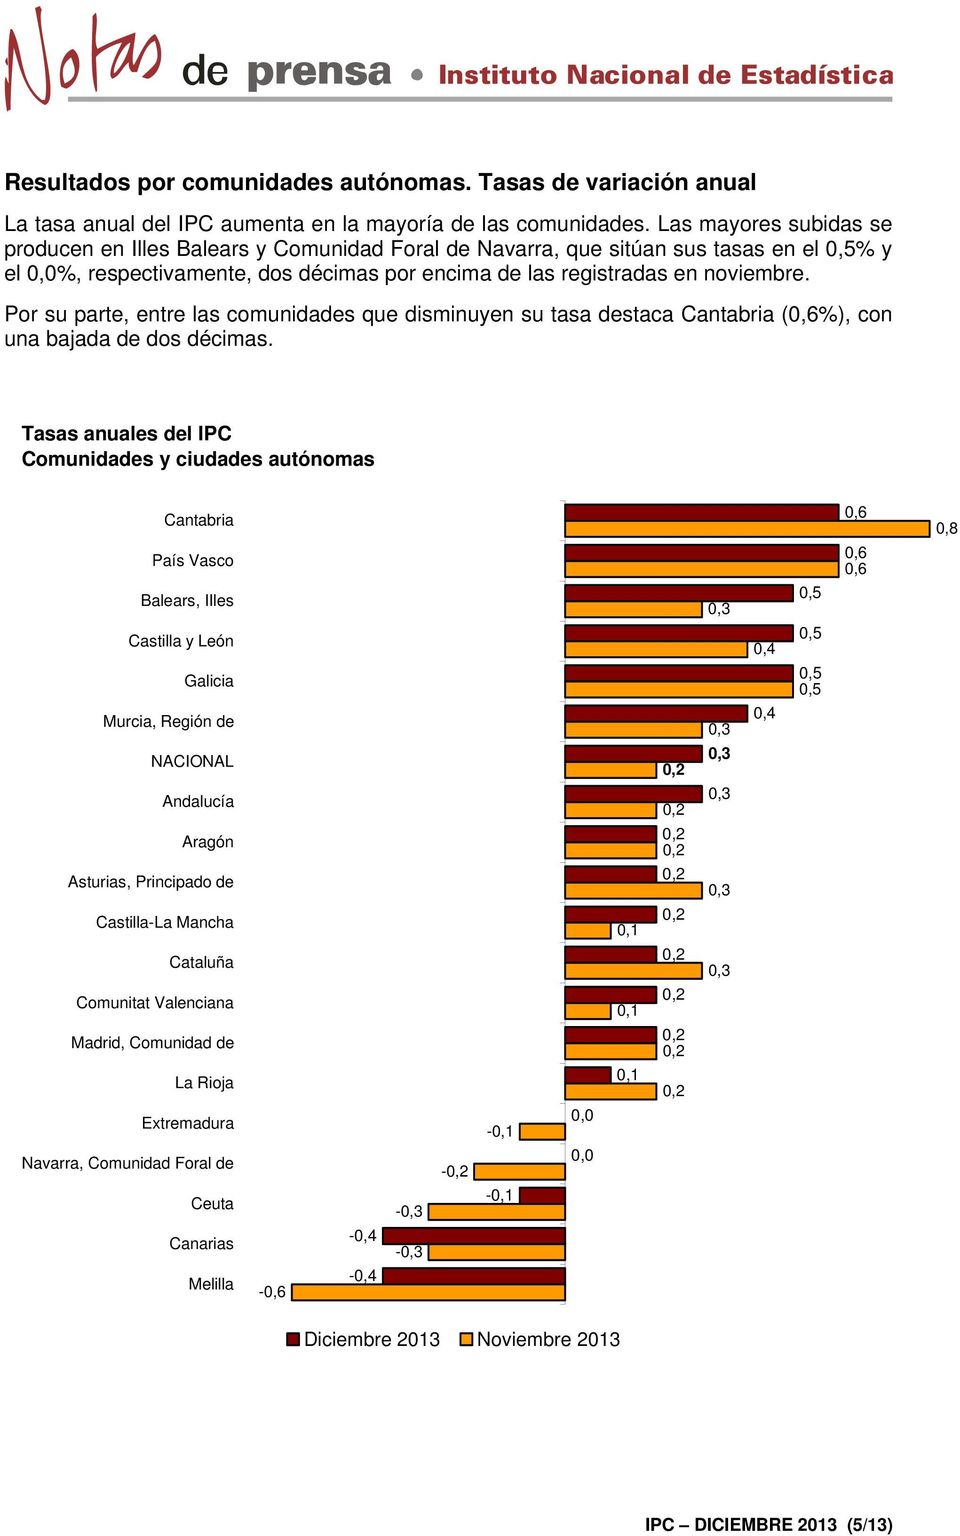 Por su parte, entre las comunidades que disminuyen su tasa destaca Cantabria (0,6%), con una bajada de dos décimas.